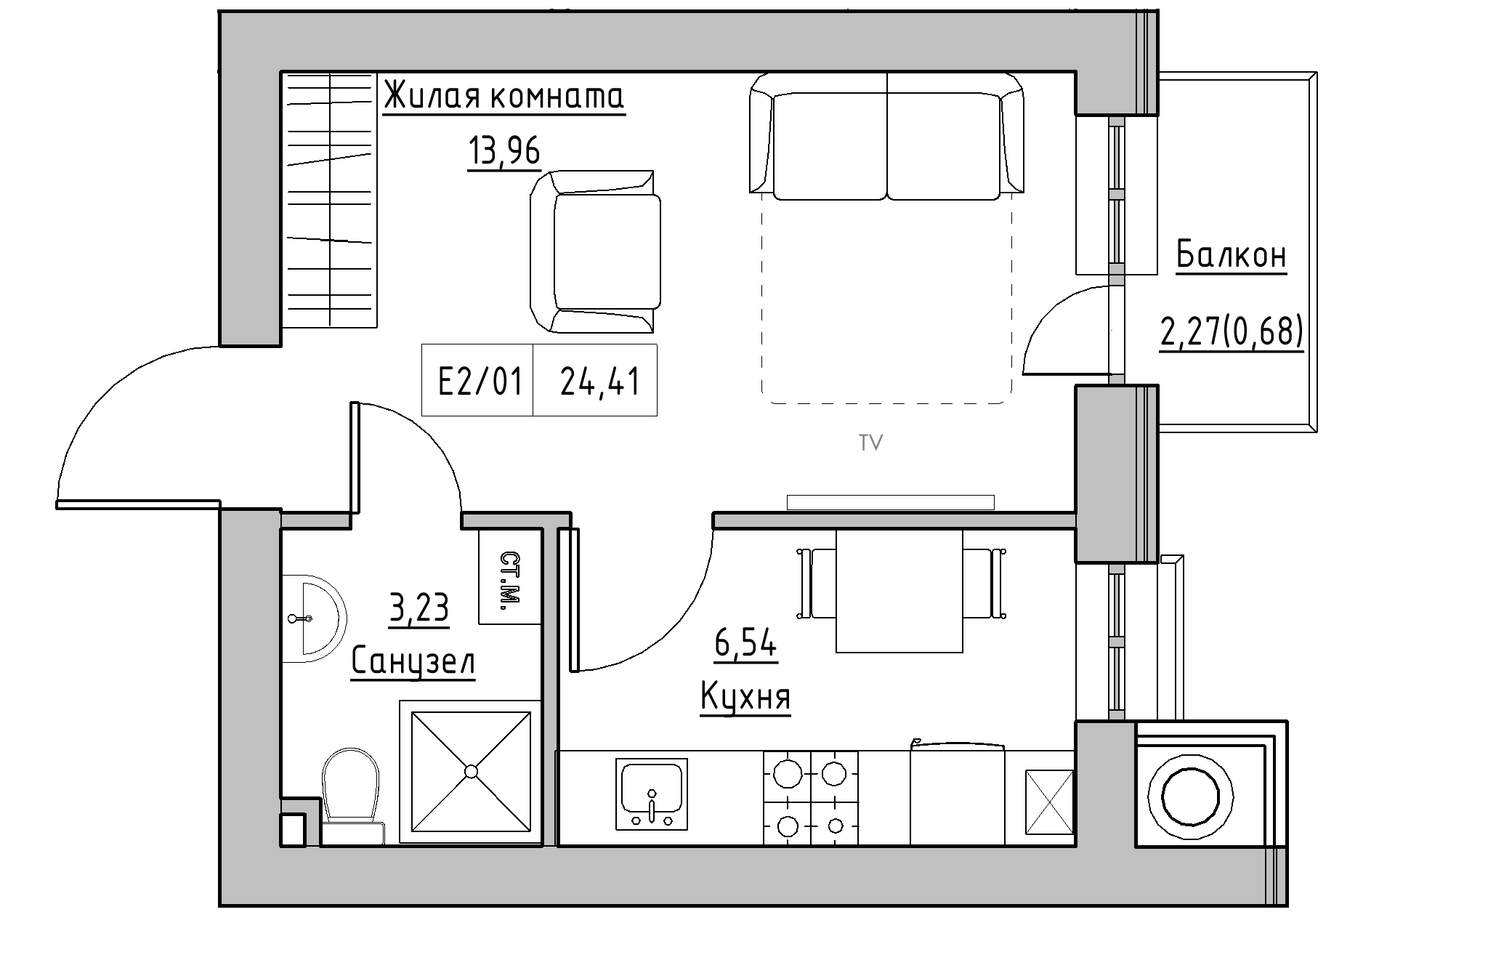 Планування 1-к квартира площею 24.41м2, KS-010-04/0009.